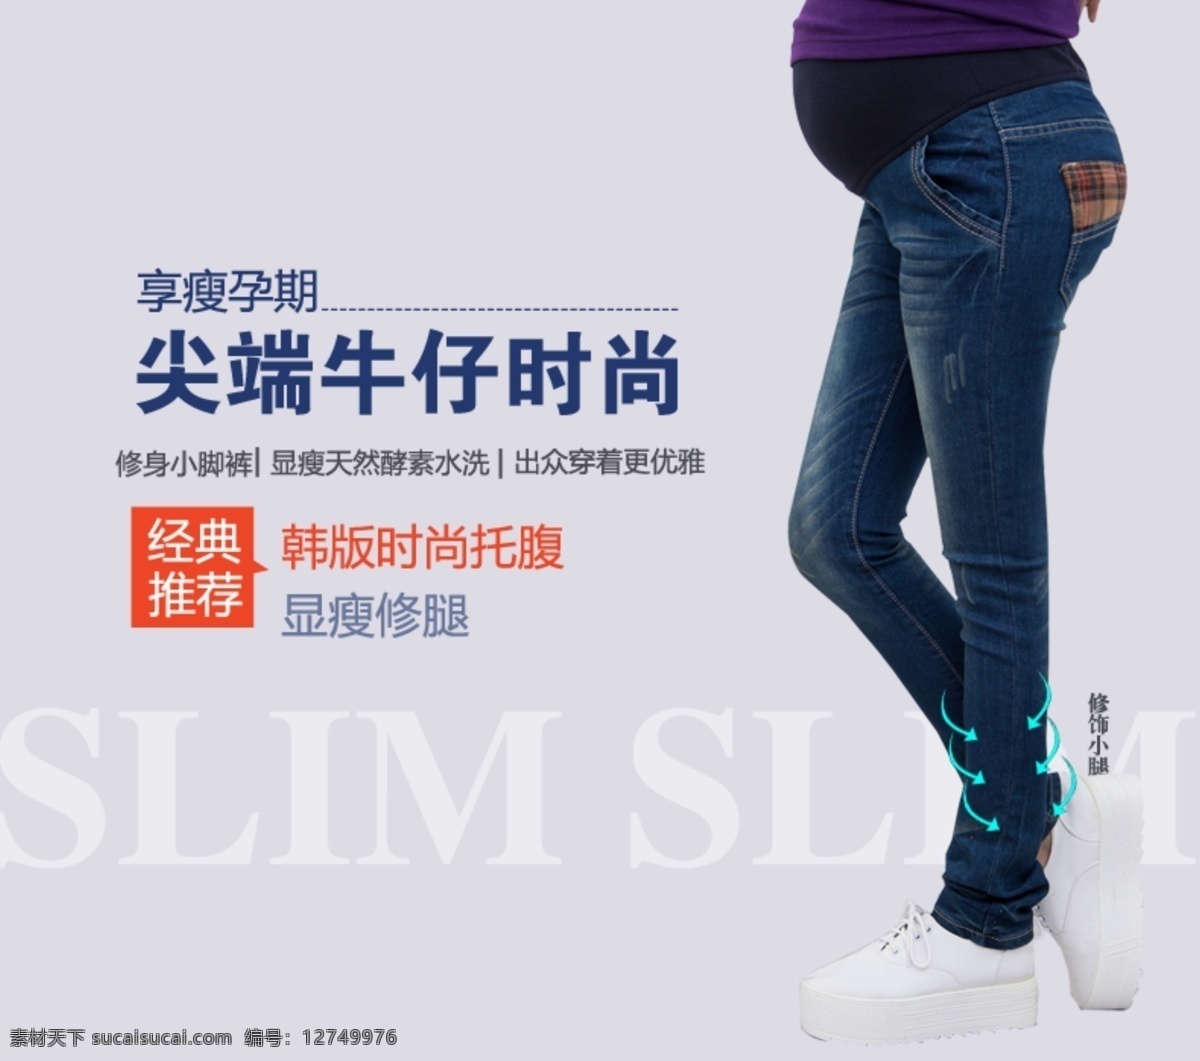 牛仔裤 直通车 时尚 尖端 孕妇装 经典 中文模板 网页模板 源文件 白色